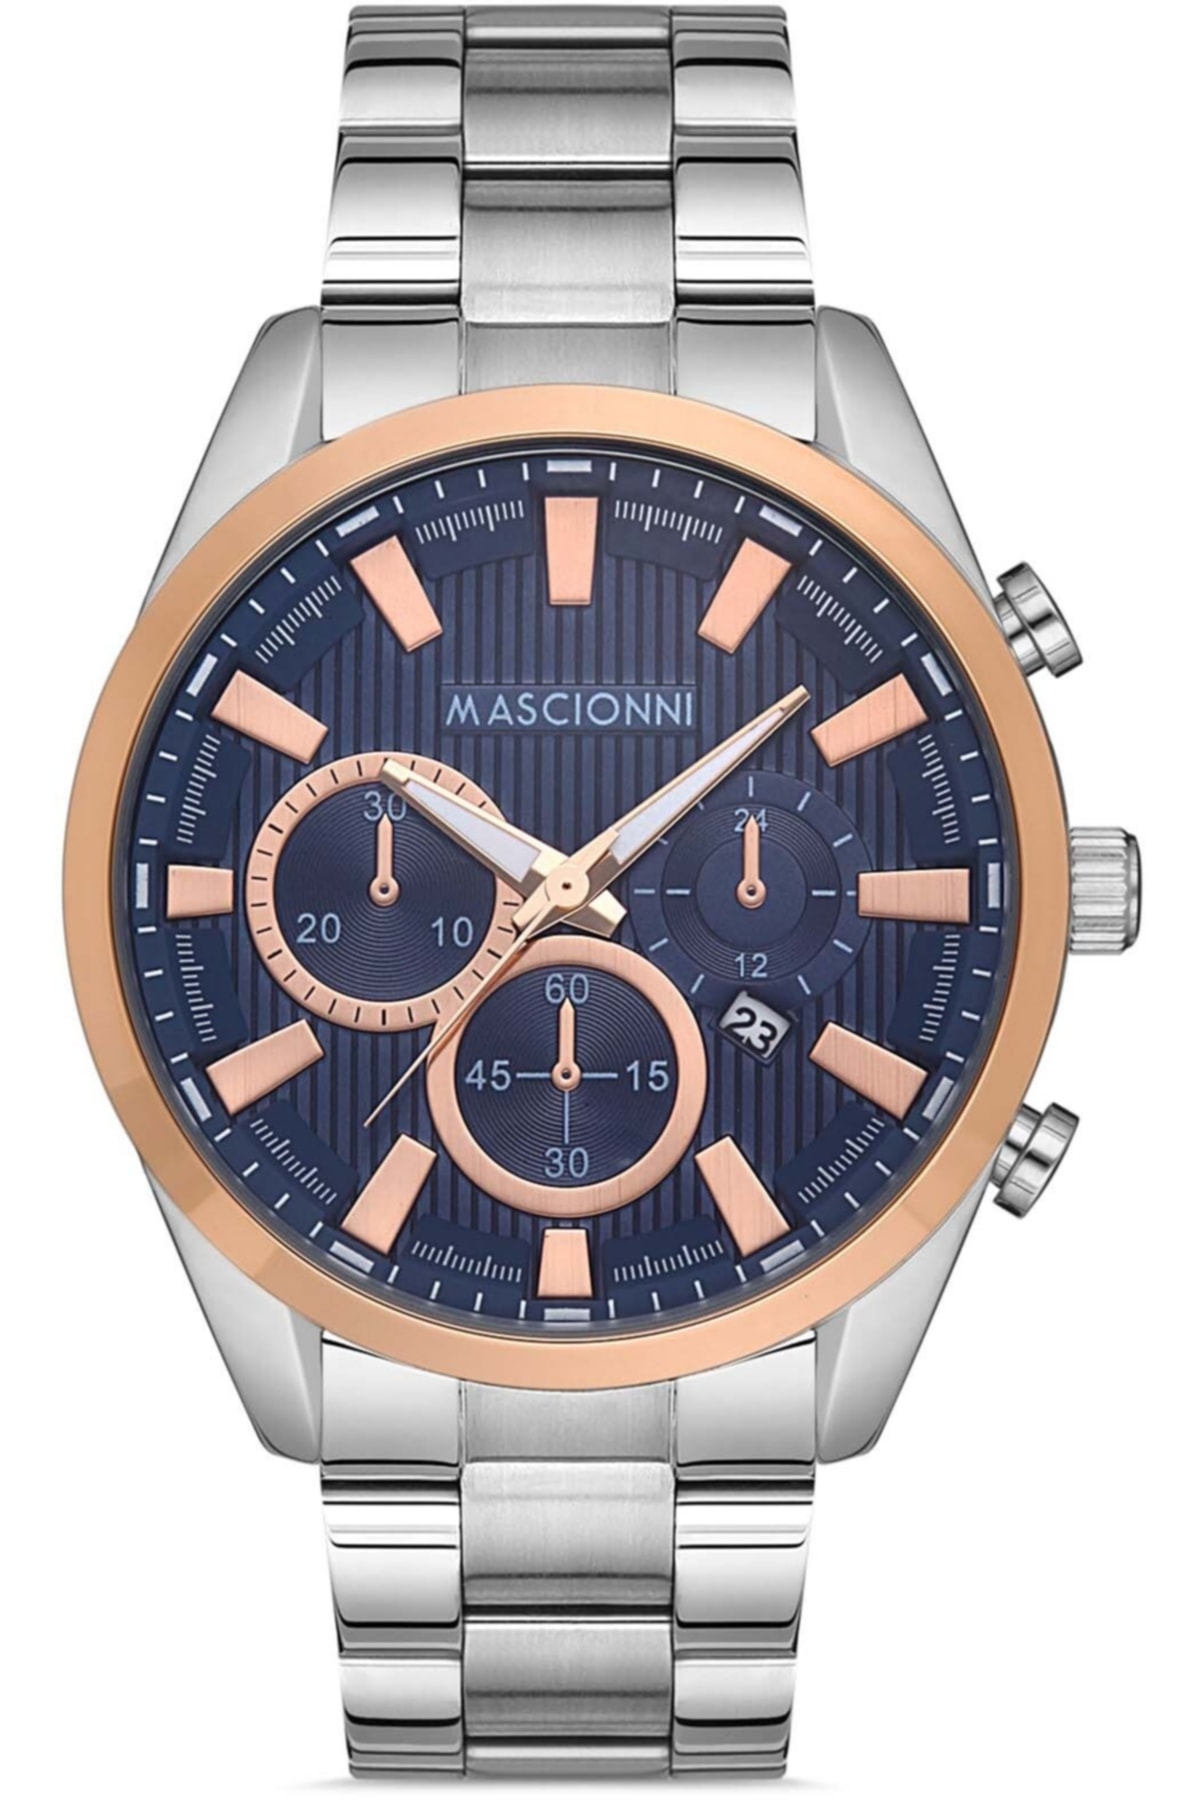 ساعت مردانه ماسیونی Mascionni با کد M.1.1072.05